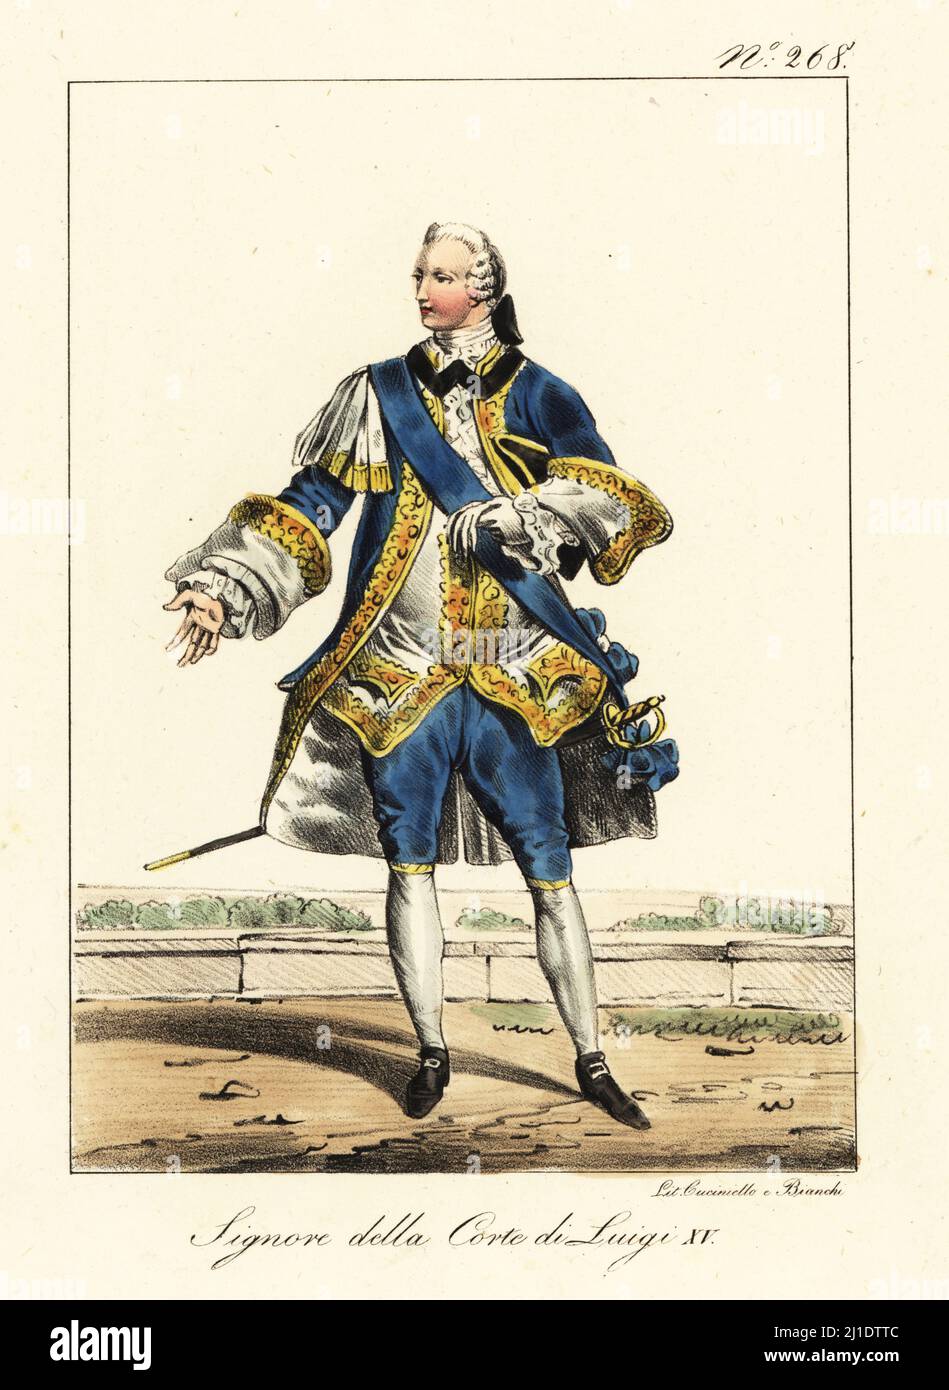 Costume di un nobile alla corte del re Luigi XV di Francia. In polvere di  parrucca, cappotto, gilet e braghe riccamente decorate con merletti e  ricami d'oro. Con scarpe con fibbia e